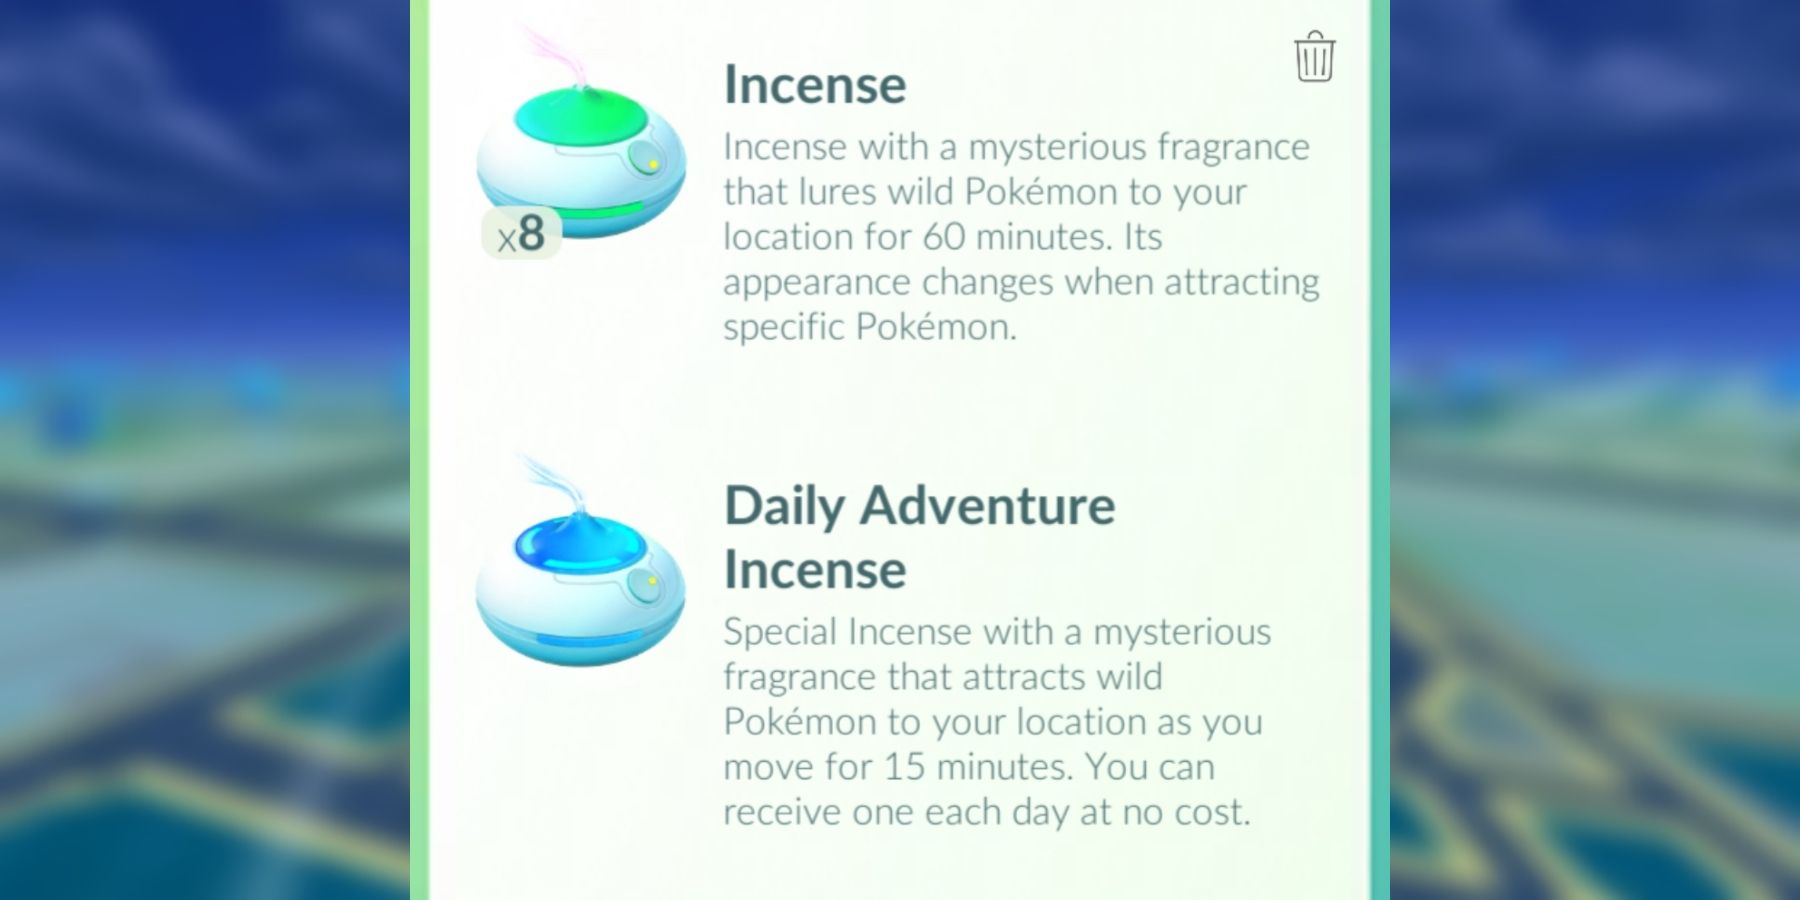 Incenso e Incenso de Aventura Diária para encontrar mais disfarces de Ditto aparecem no Pokémon GO